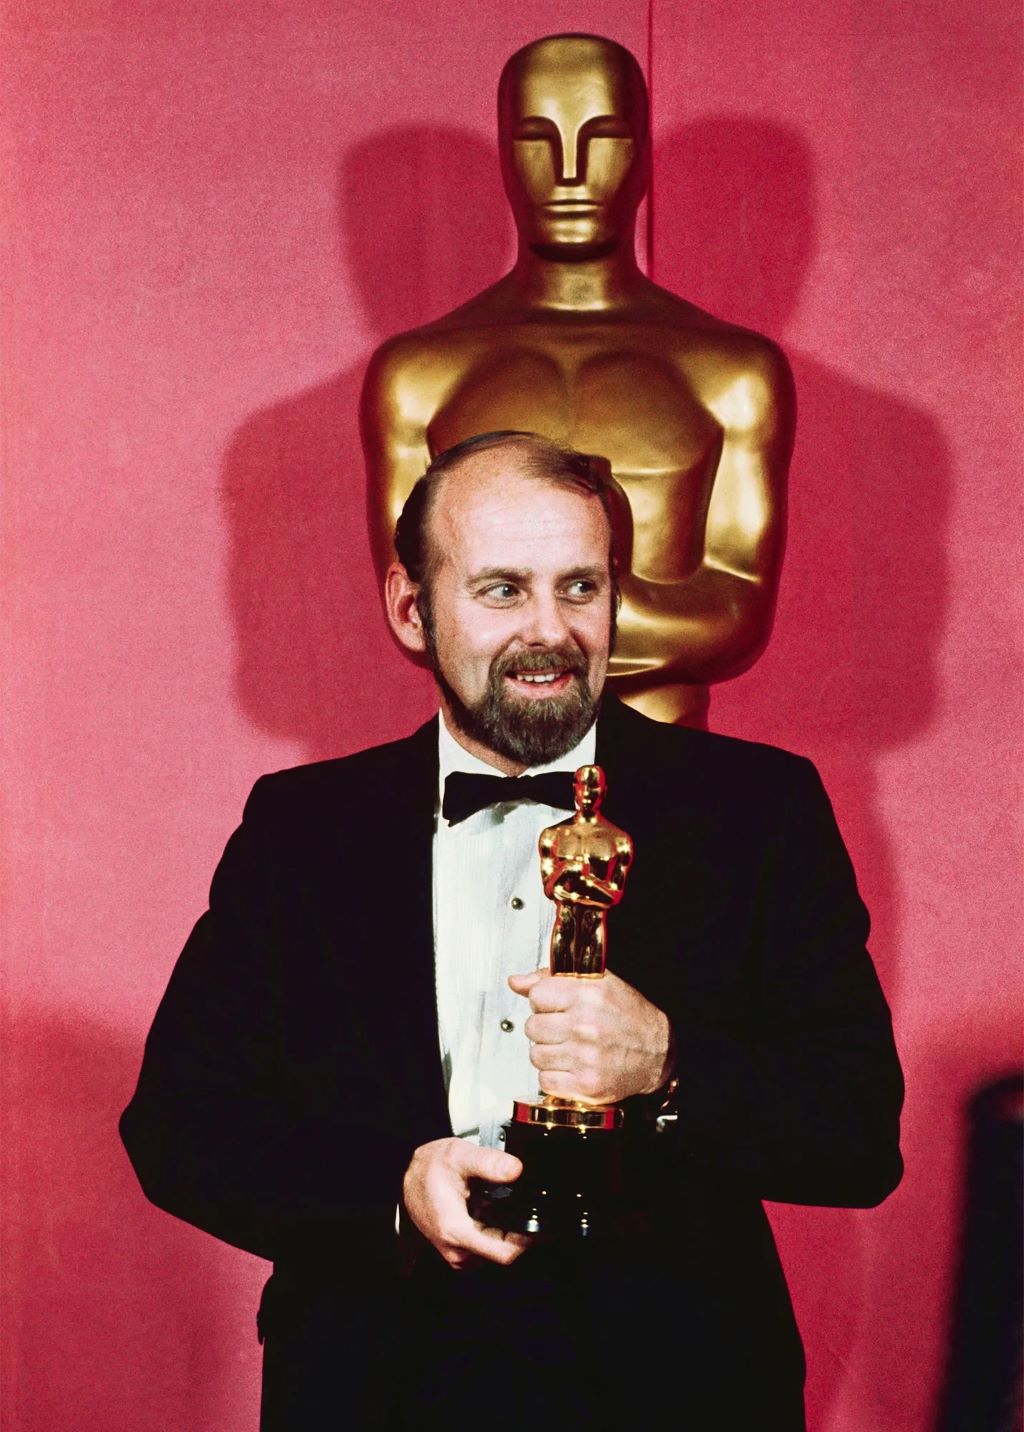 Bob-Fosse-Oscar-1973 getty.jpg